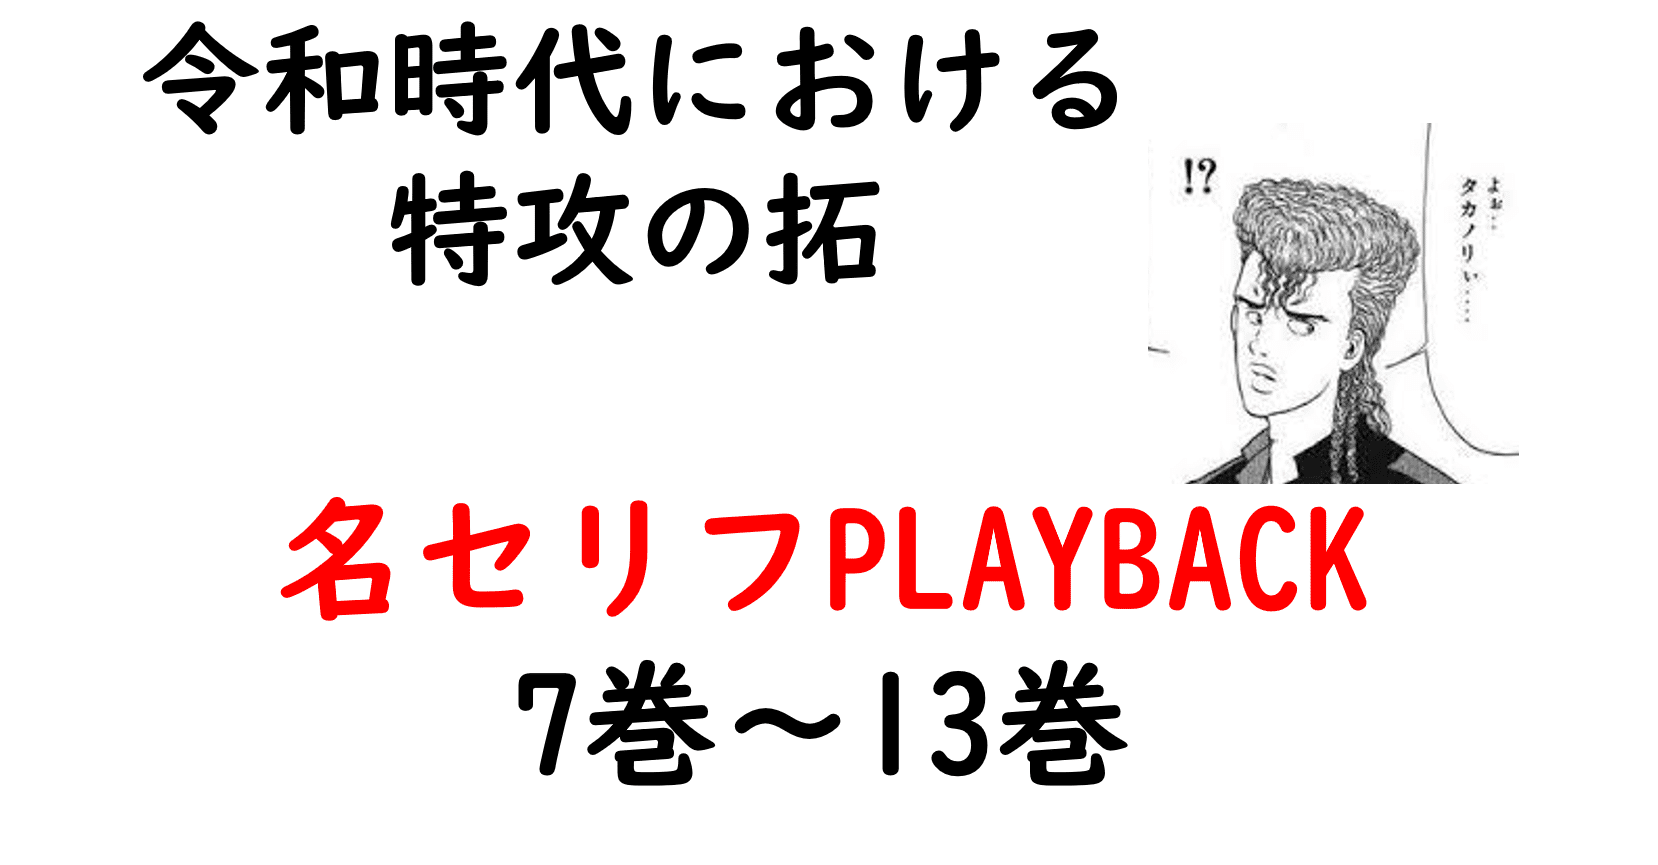 特攻の拓 名セリフplayback 7巻 13巻 Bukkomiyamada Note